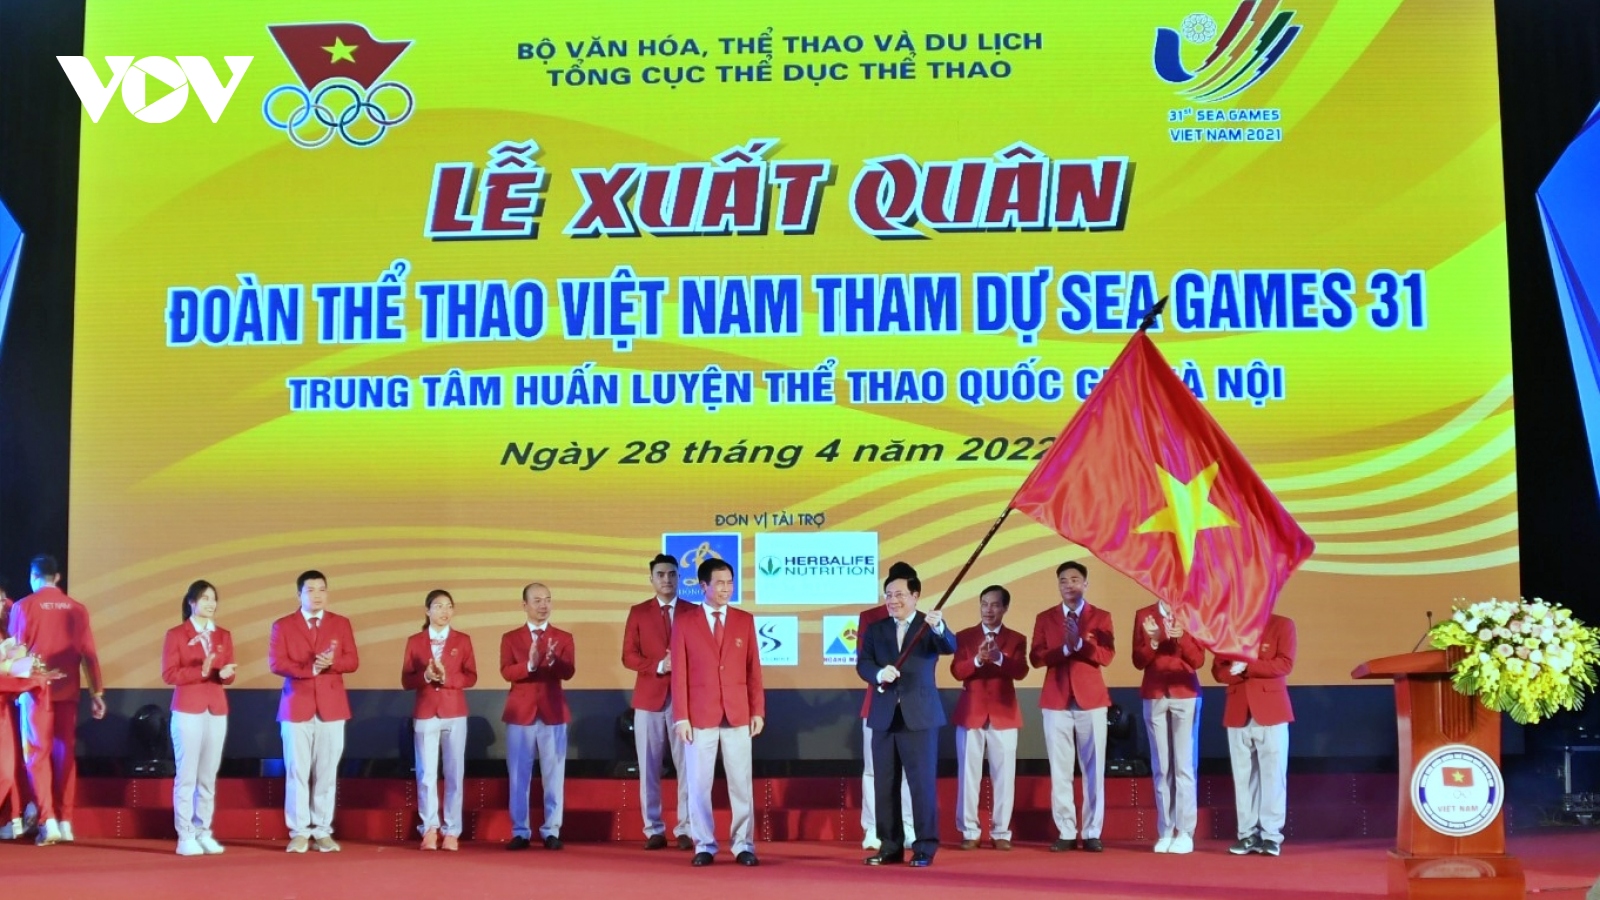 SEA Games 31 là bước đệm để Thể thao Việt Nam tiến vào đấu trường ASIAD và Olympic